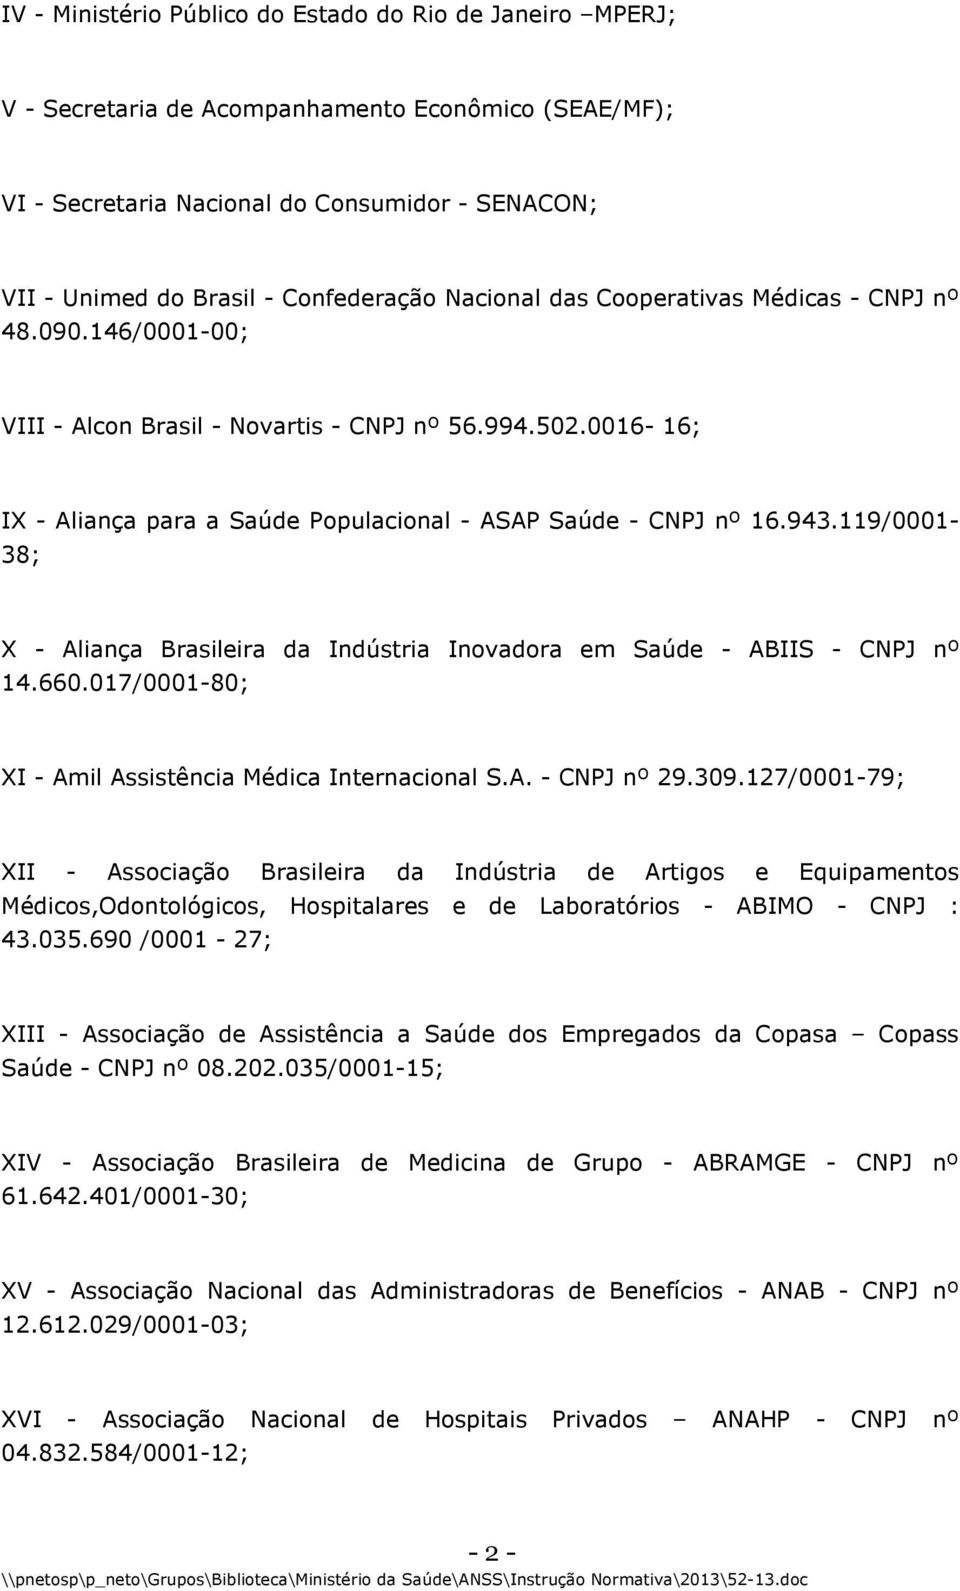 0016-16; IX - Aliança para a Saúde Populacional - ASAP Saúde - CNPJ nº 16.943.119/0001-38; X - Aliança Brasileira da Indústria Inovadora em Saúde - ABIIS - CNPJ nº 14.660.